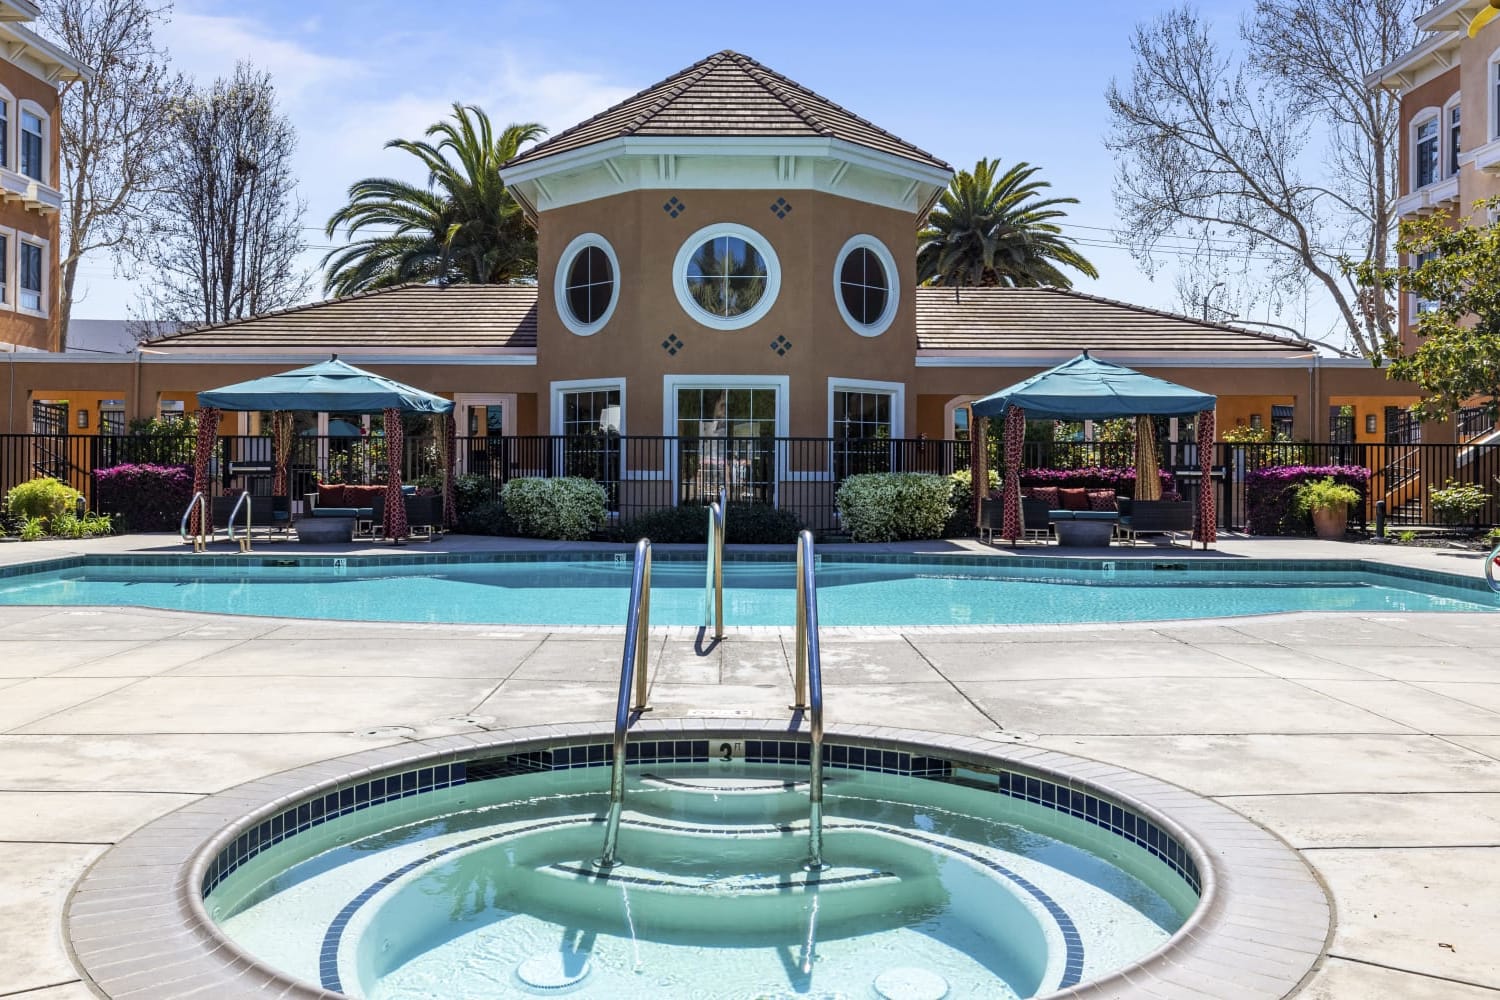 Swimming pool at Villa Del Sol in Sunnyvale, California